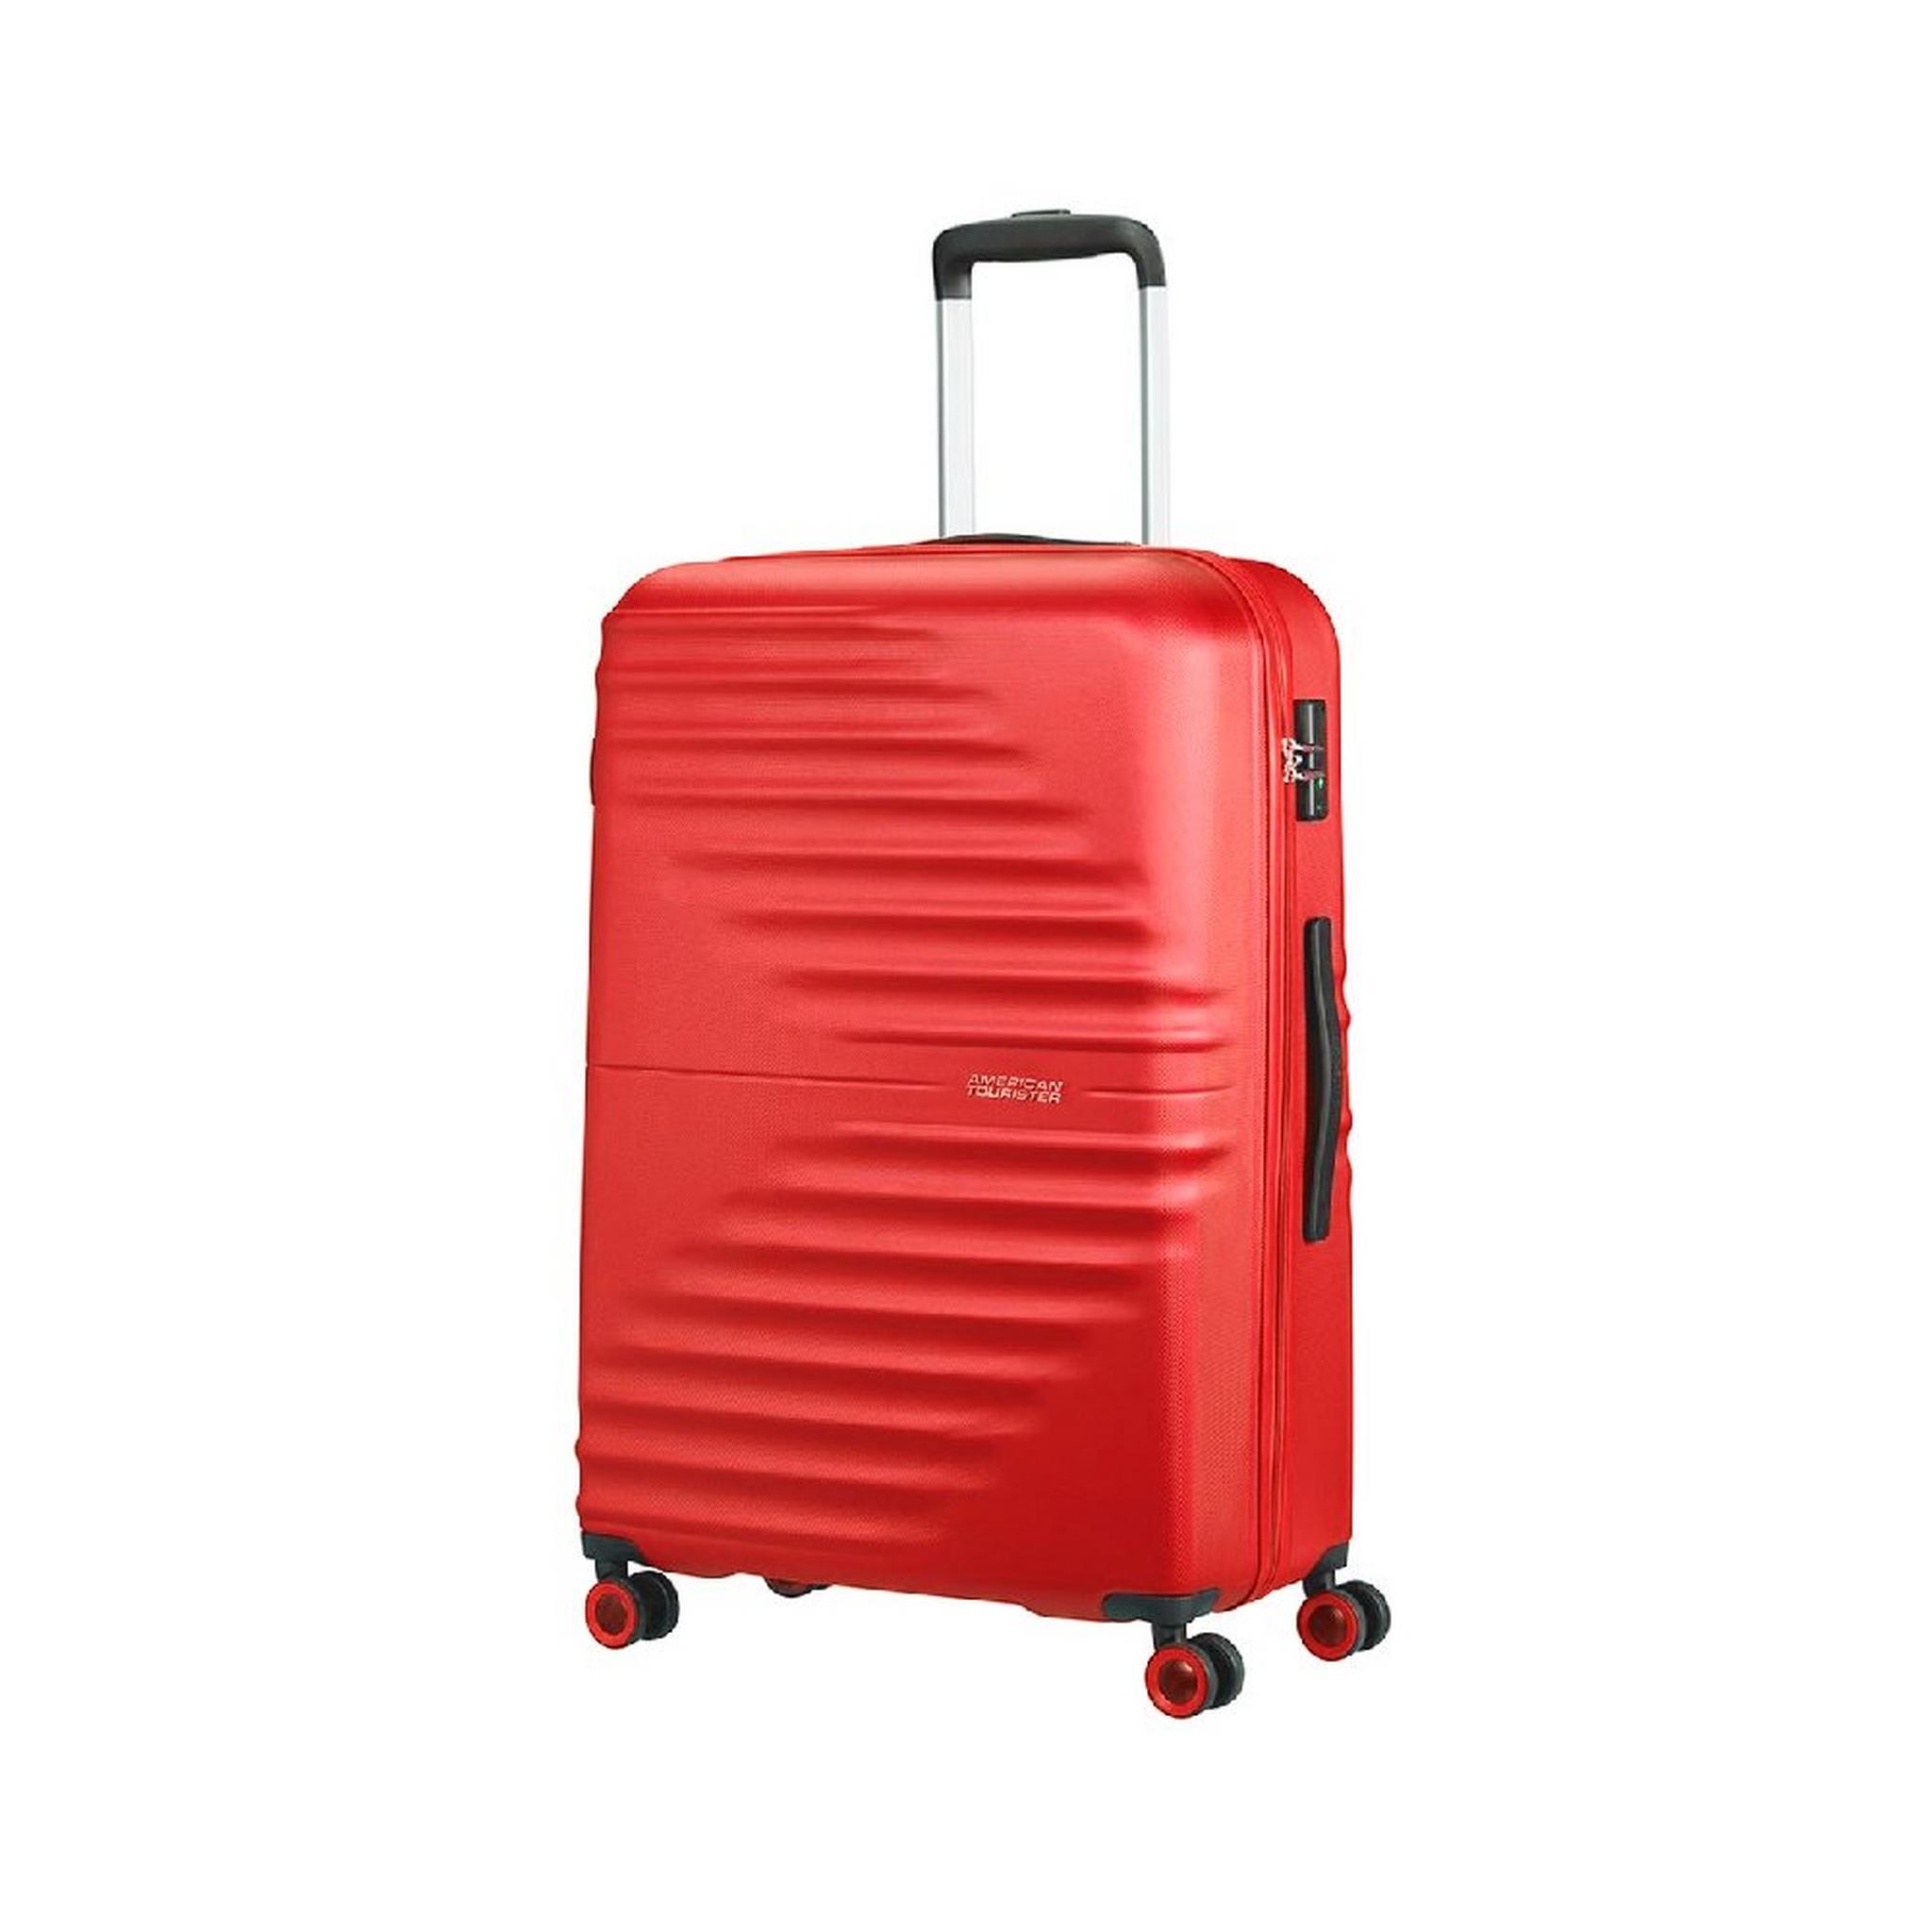 حقيبة سفر تويست ويفز بجوانب صلبة وعجلات دوارة  77سم، QC6X00008 - أحمر فيفيد